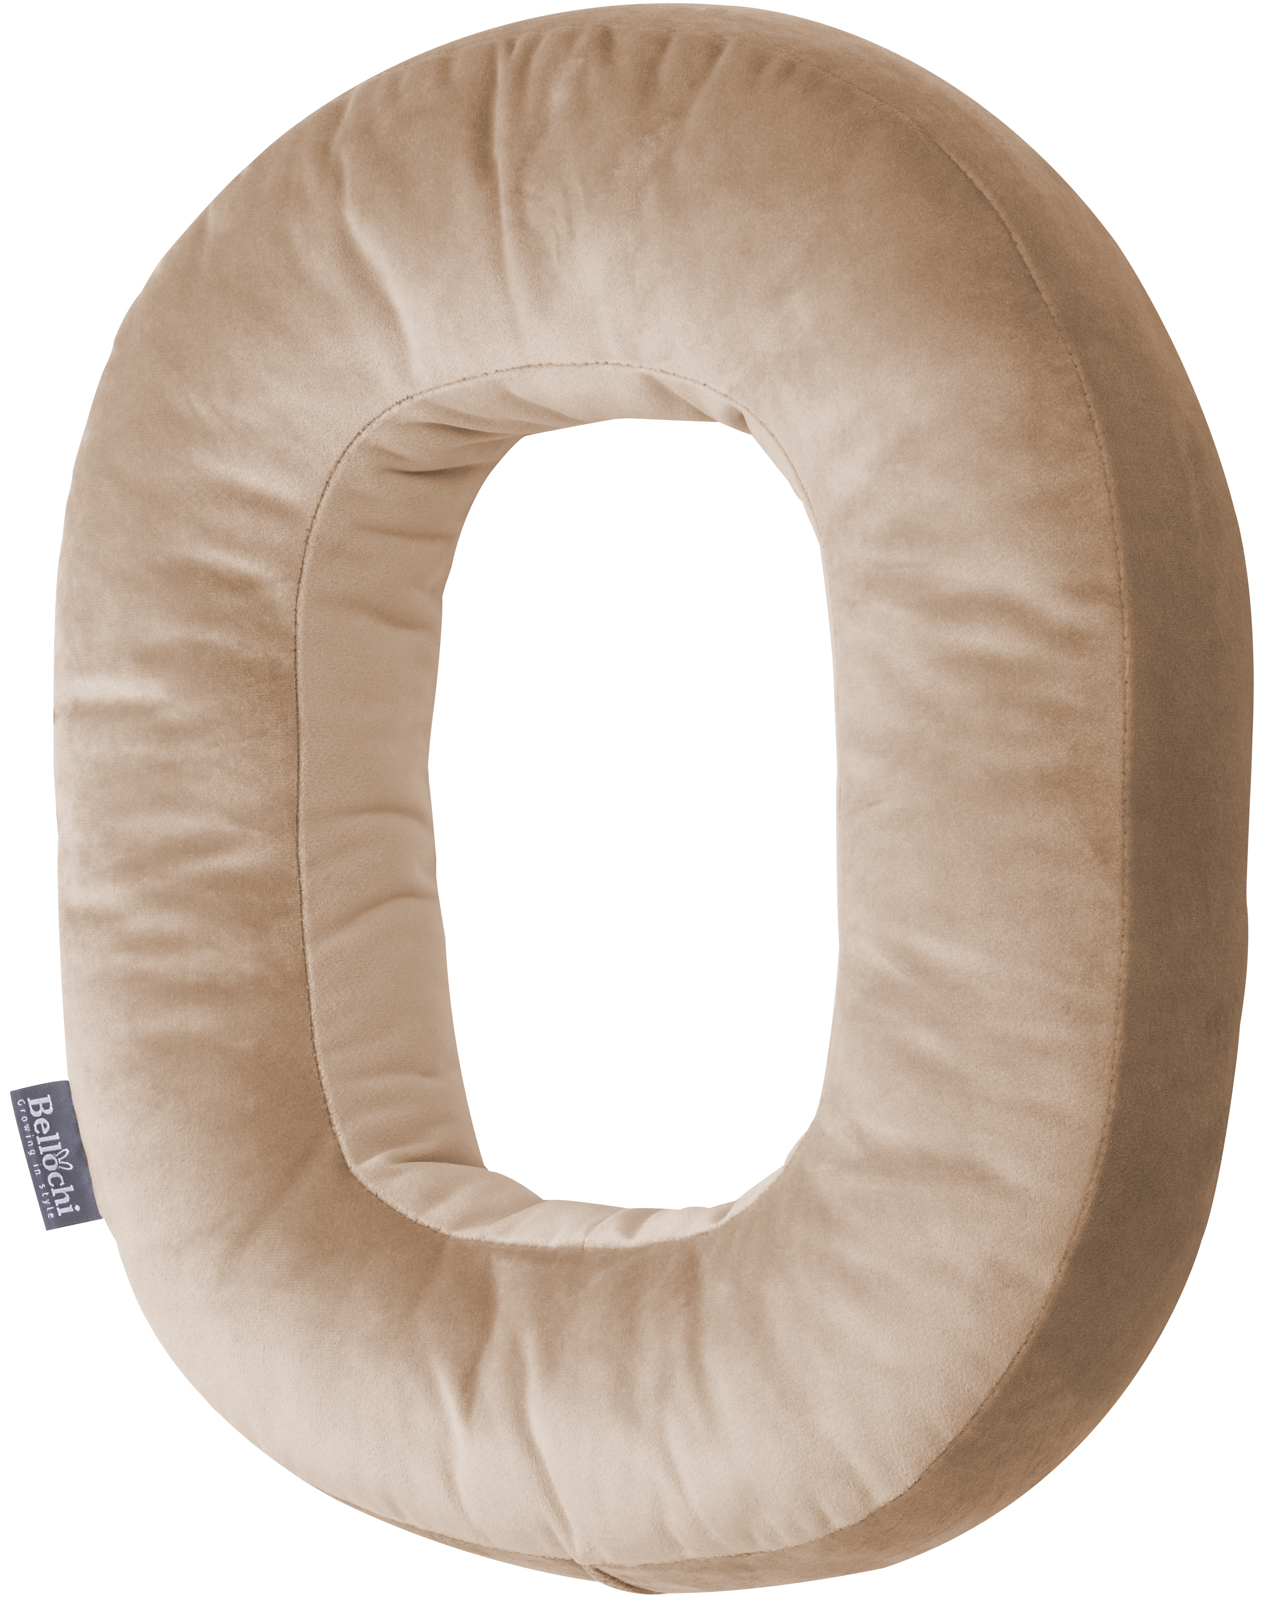 Decorative velvet letter pillow O shaped beige